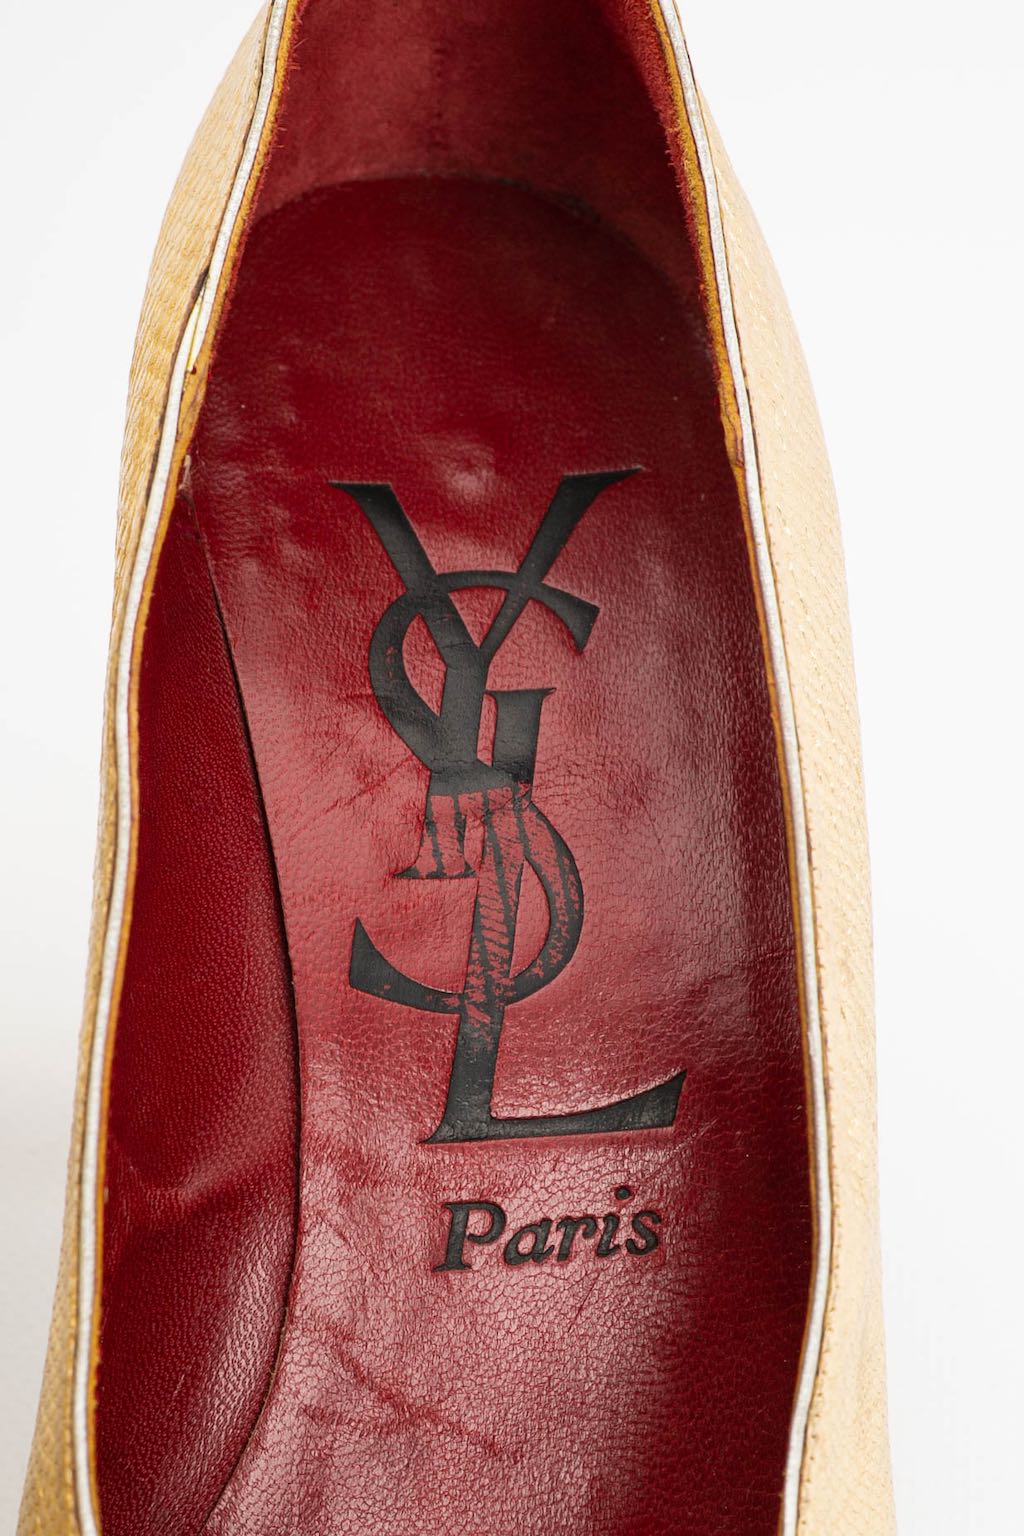 Escarpins en cuir doré Yves Saint Laurent